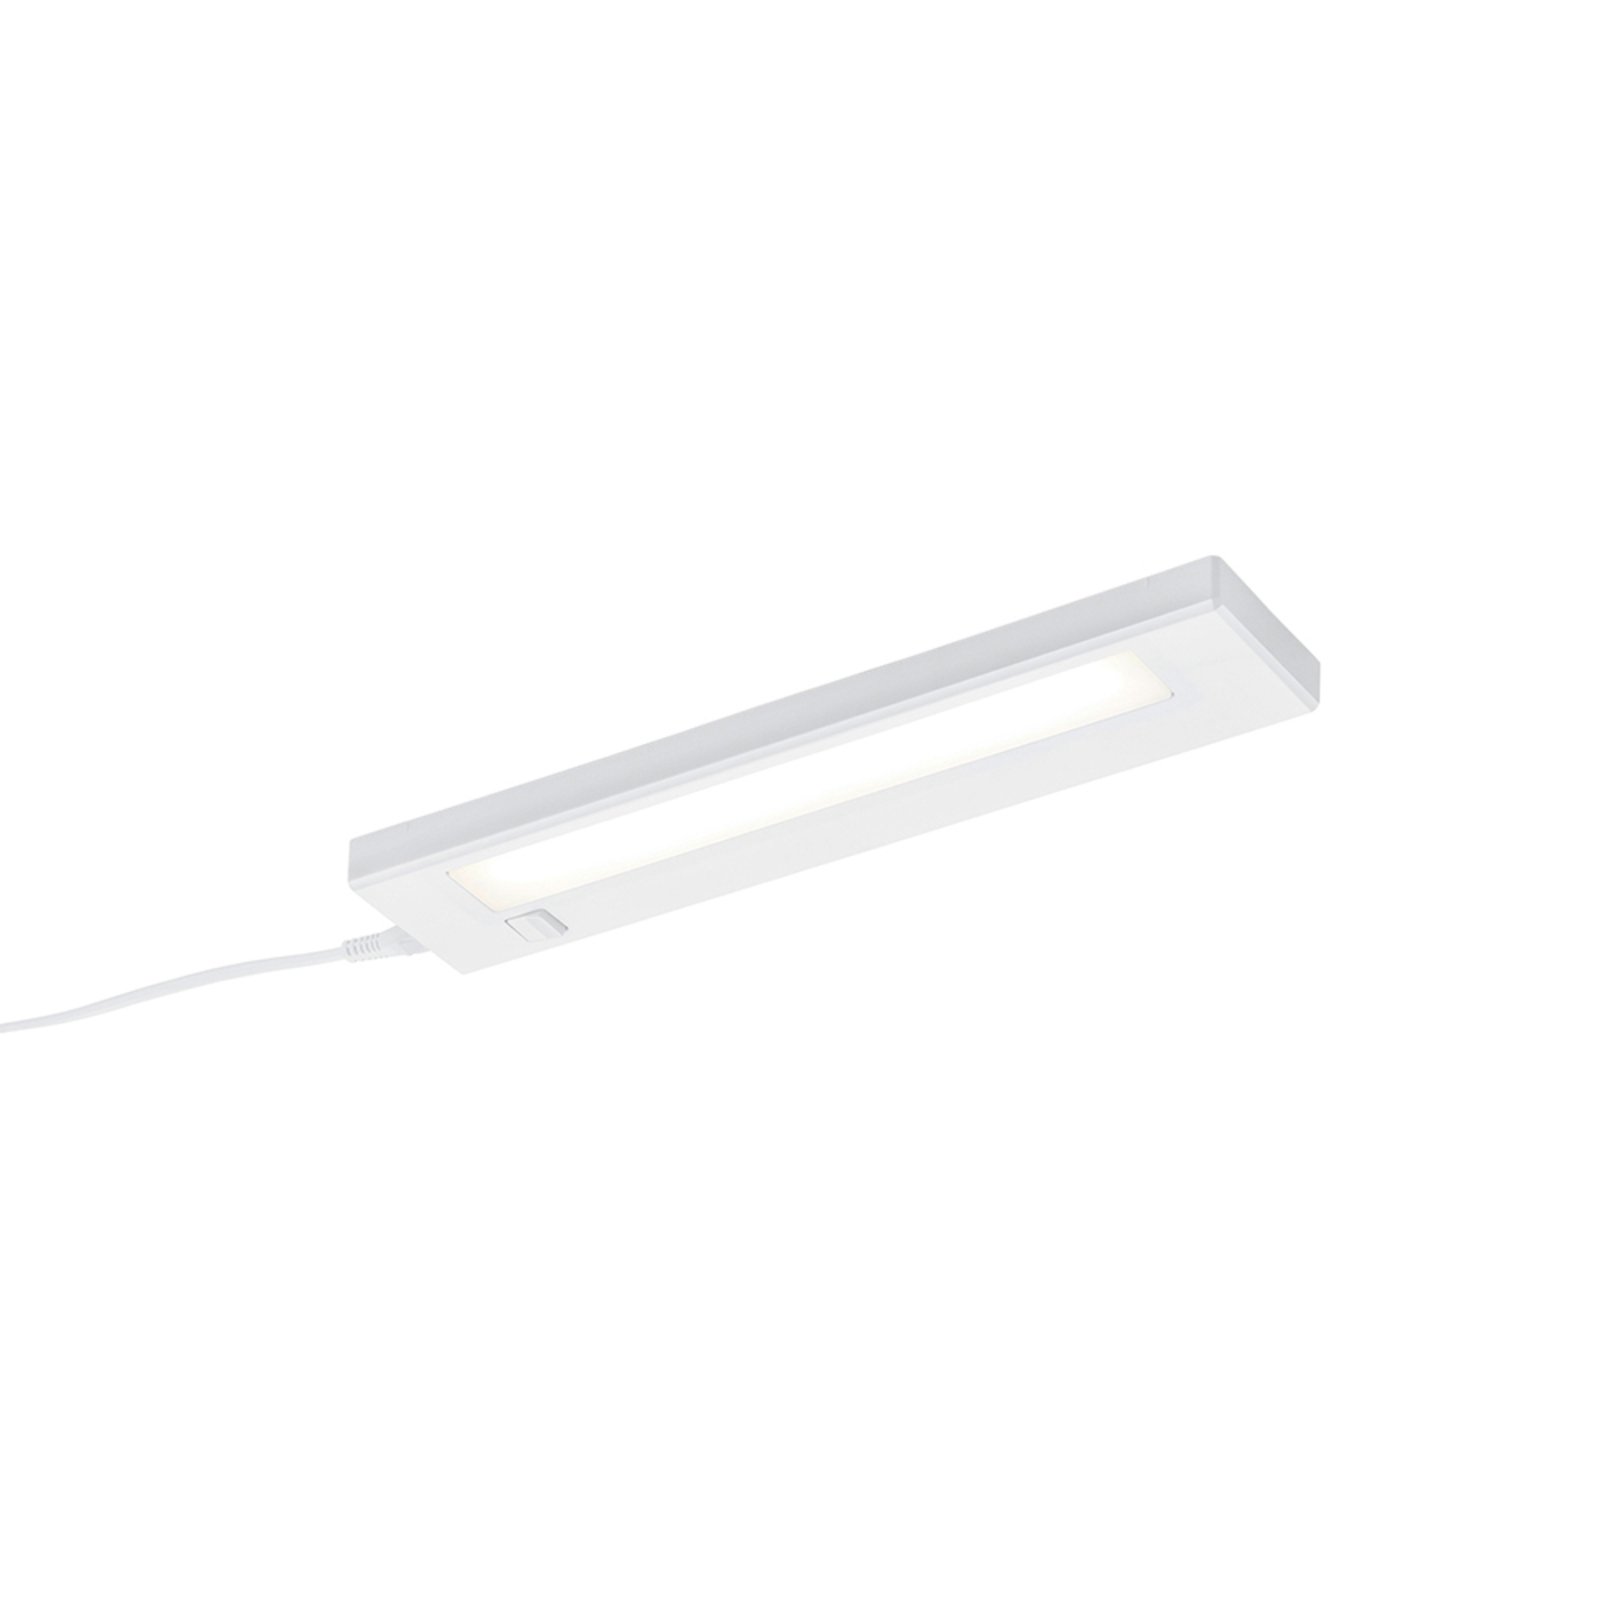 Alino LED rasvjeta ispod ormarića, bijela, dužina 34 cm